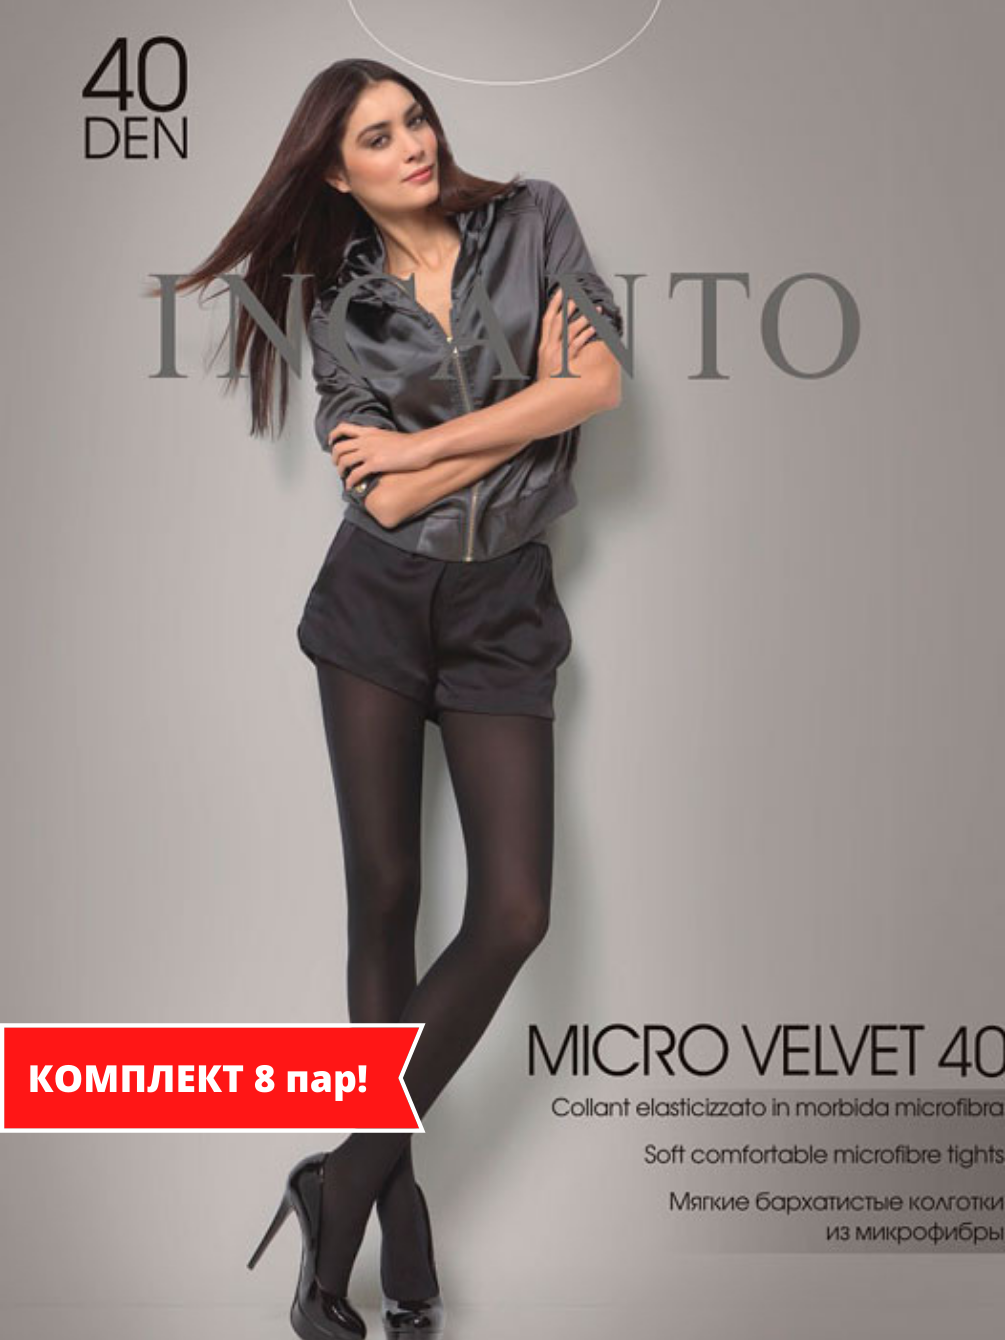 Колготки Incanto Micro Velvet 40 - купить в интернет магазине Calzevita.ru